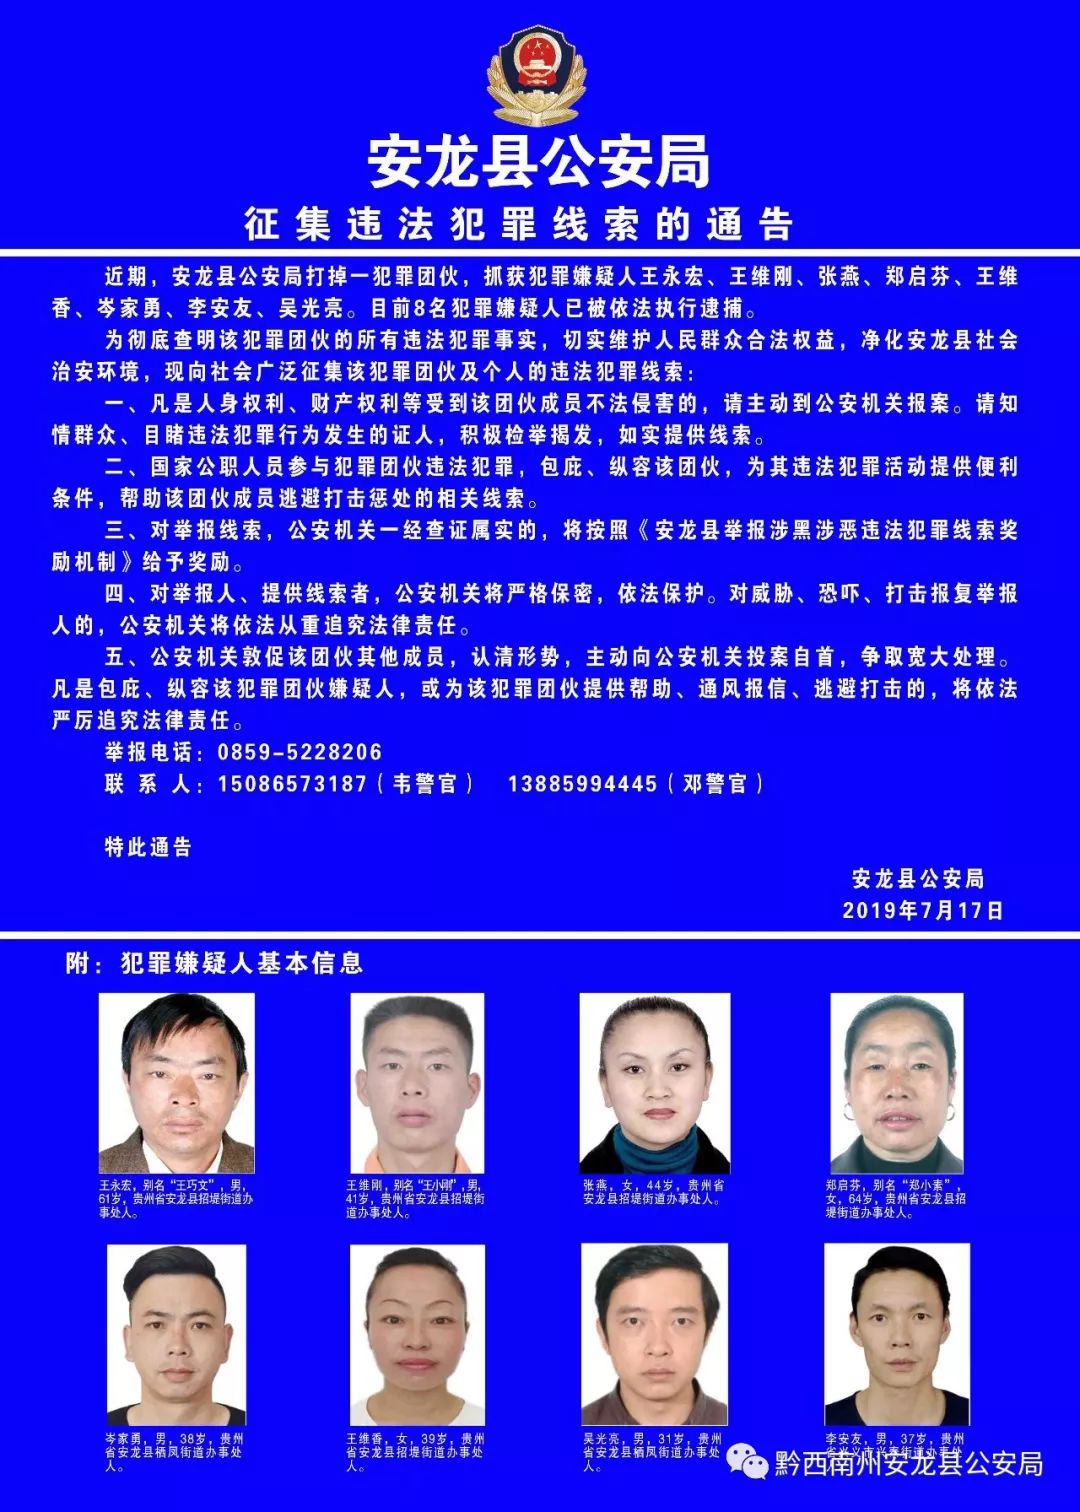 【警情通告】安龙县公安局征集违法犯罪线索的通告